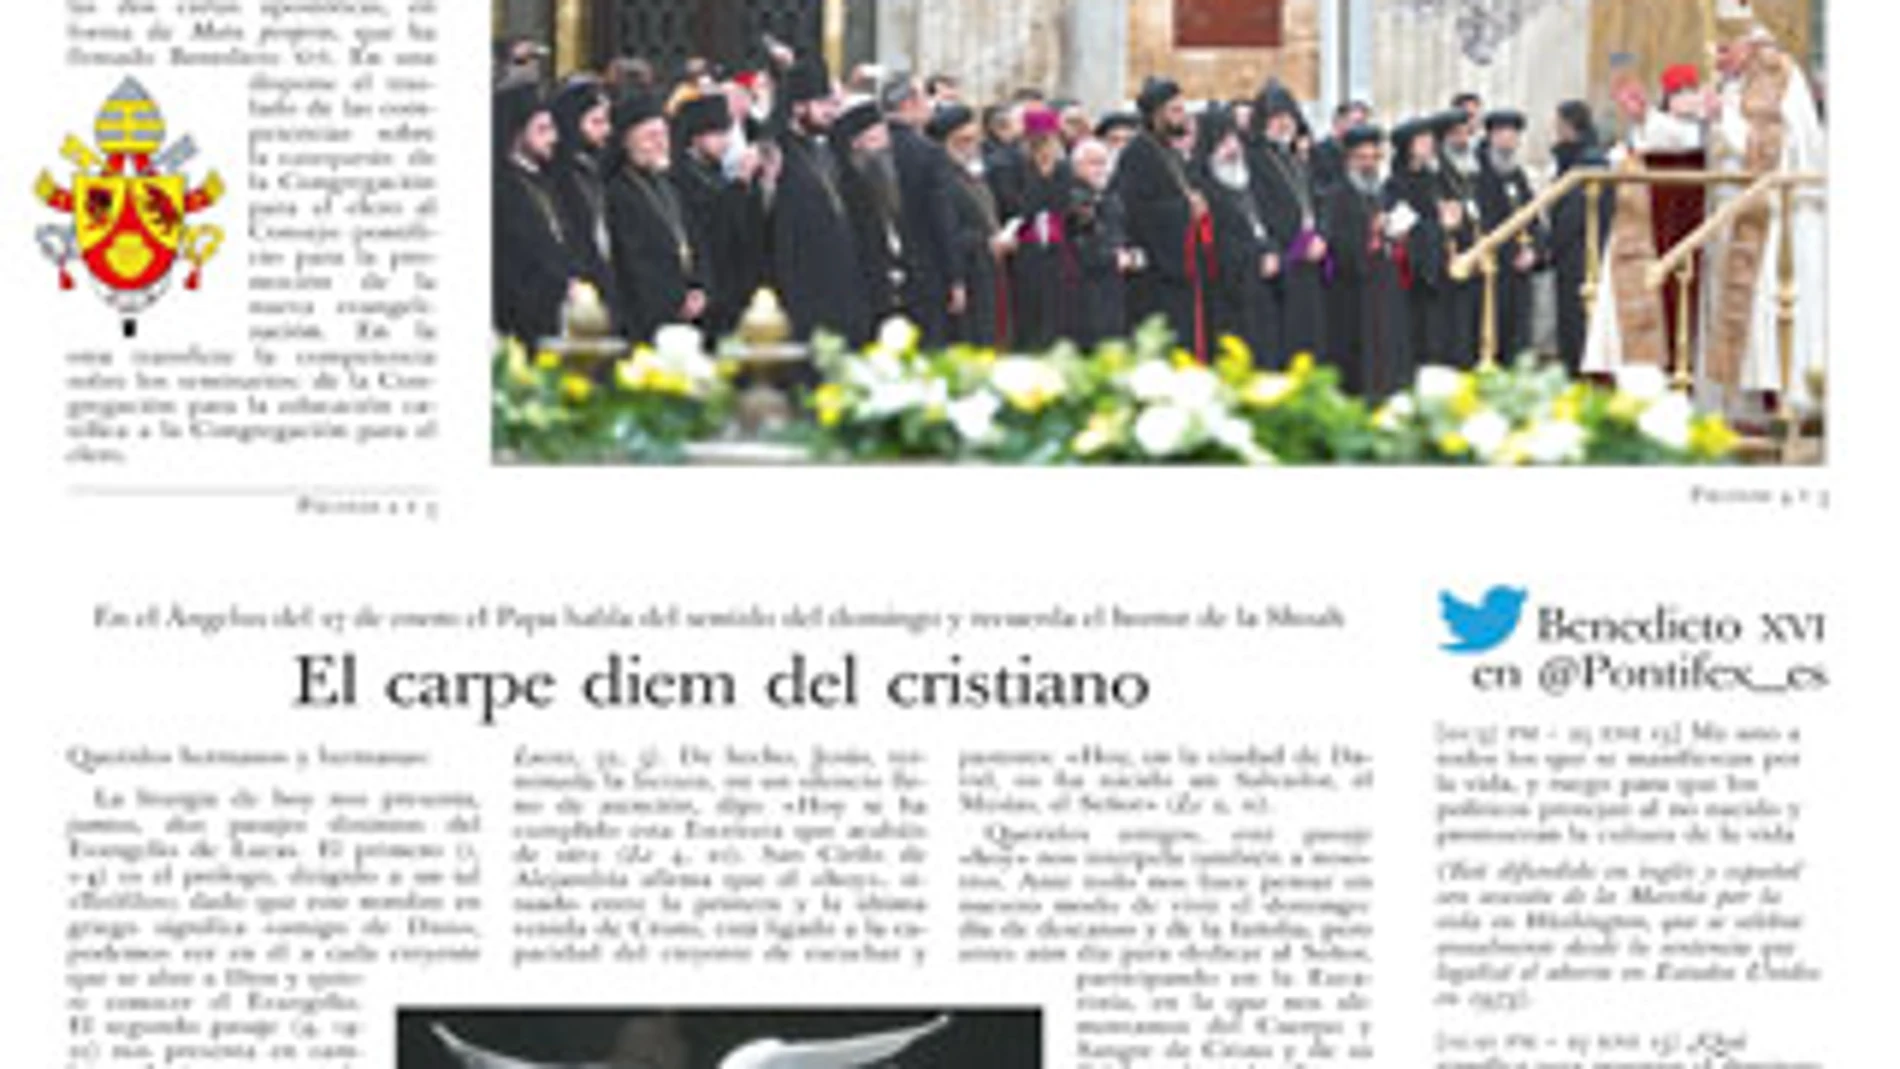 Losservatore Romano 2013-02-03